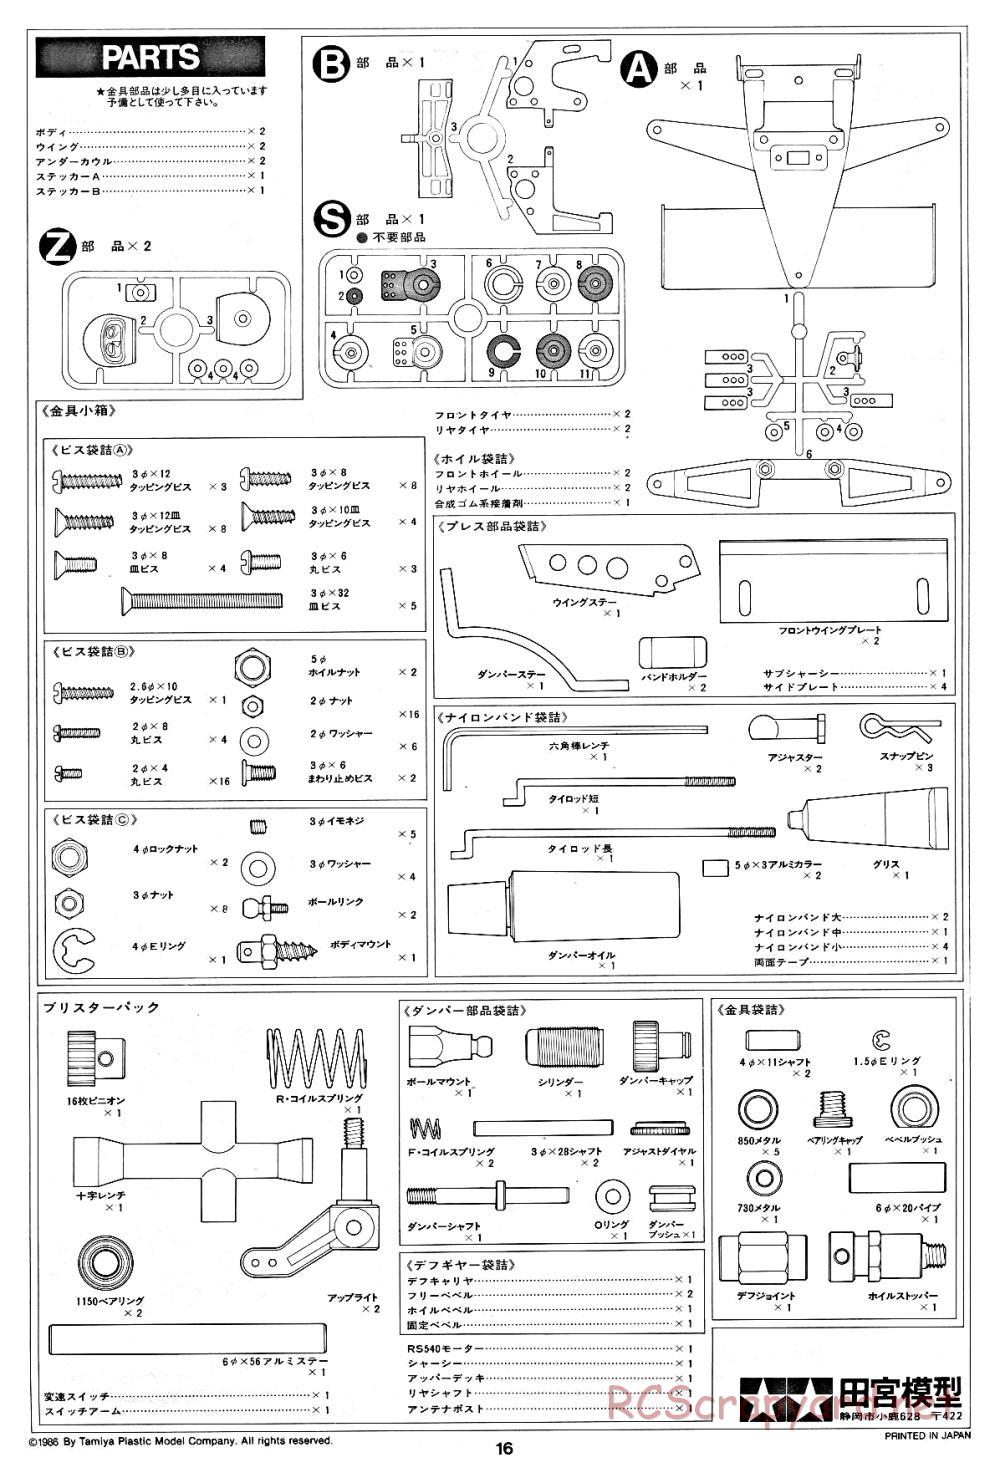 Tamiya - Road Wizard F-1 - 58053 - Manual - Page 16